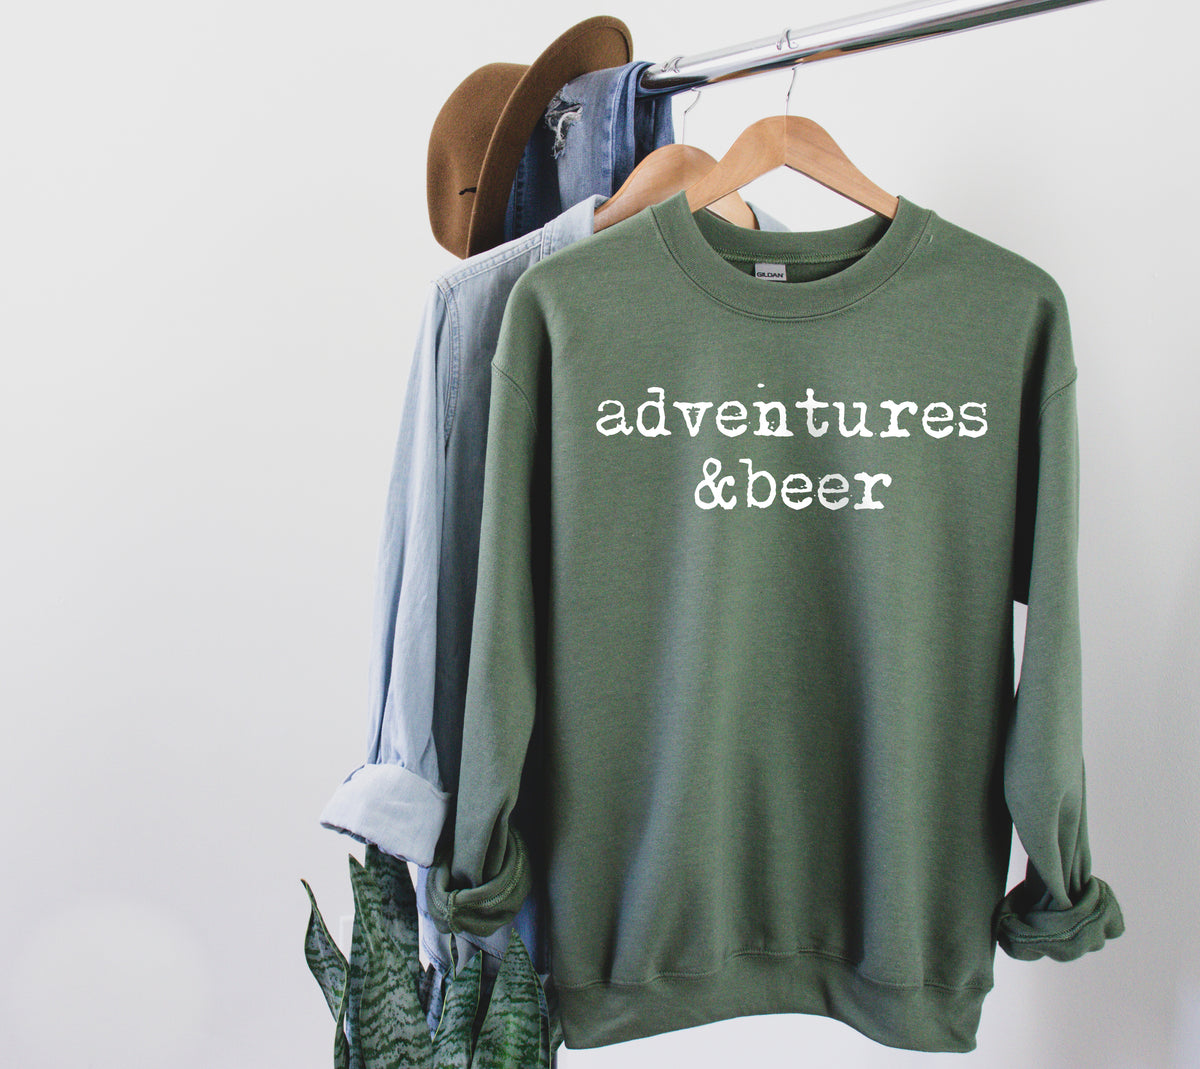 Adventures & Beer Sweatshirt